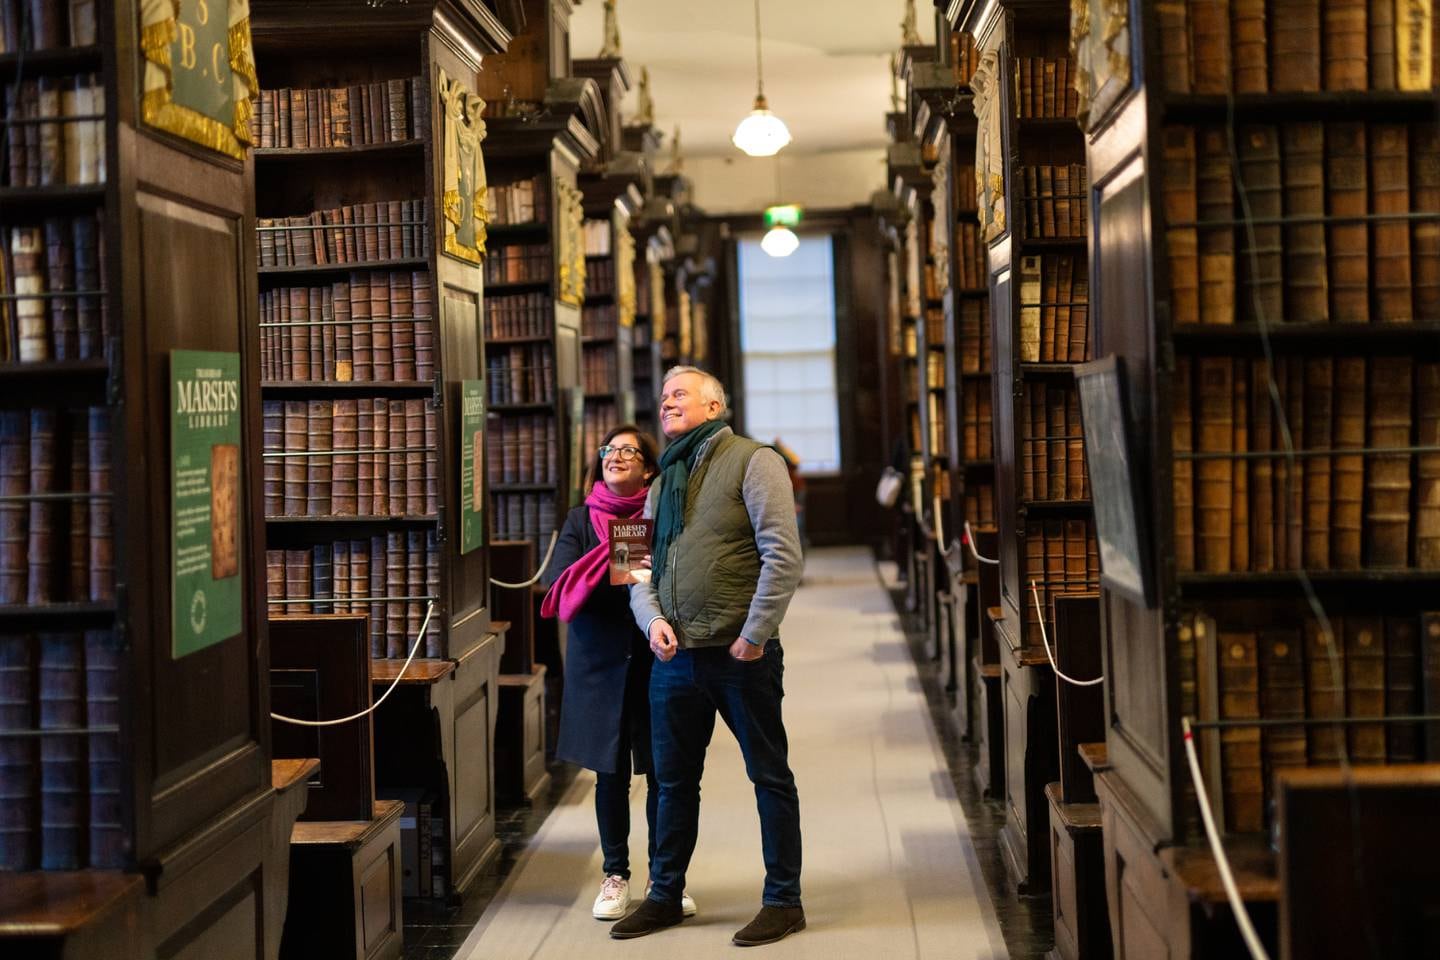 Marsh's Library in Dublin